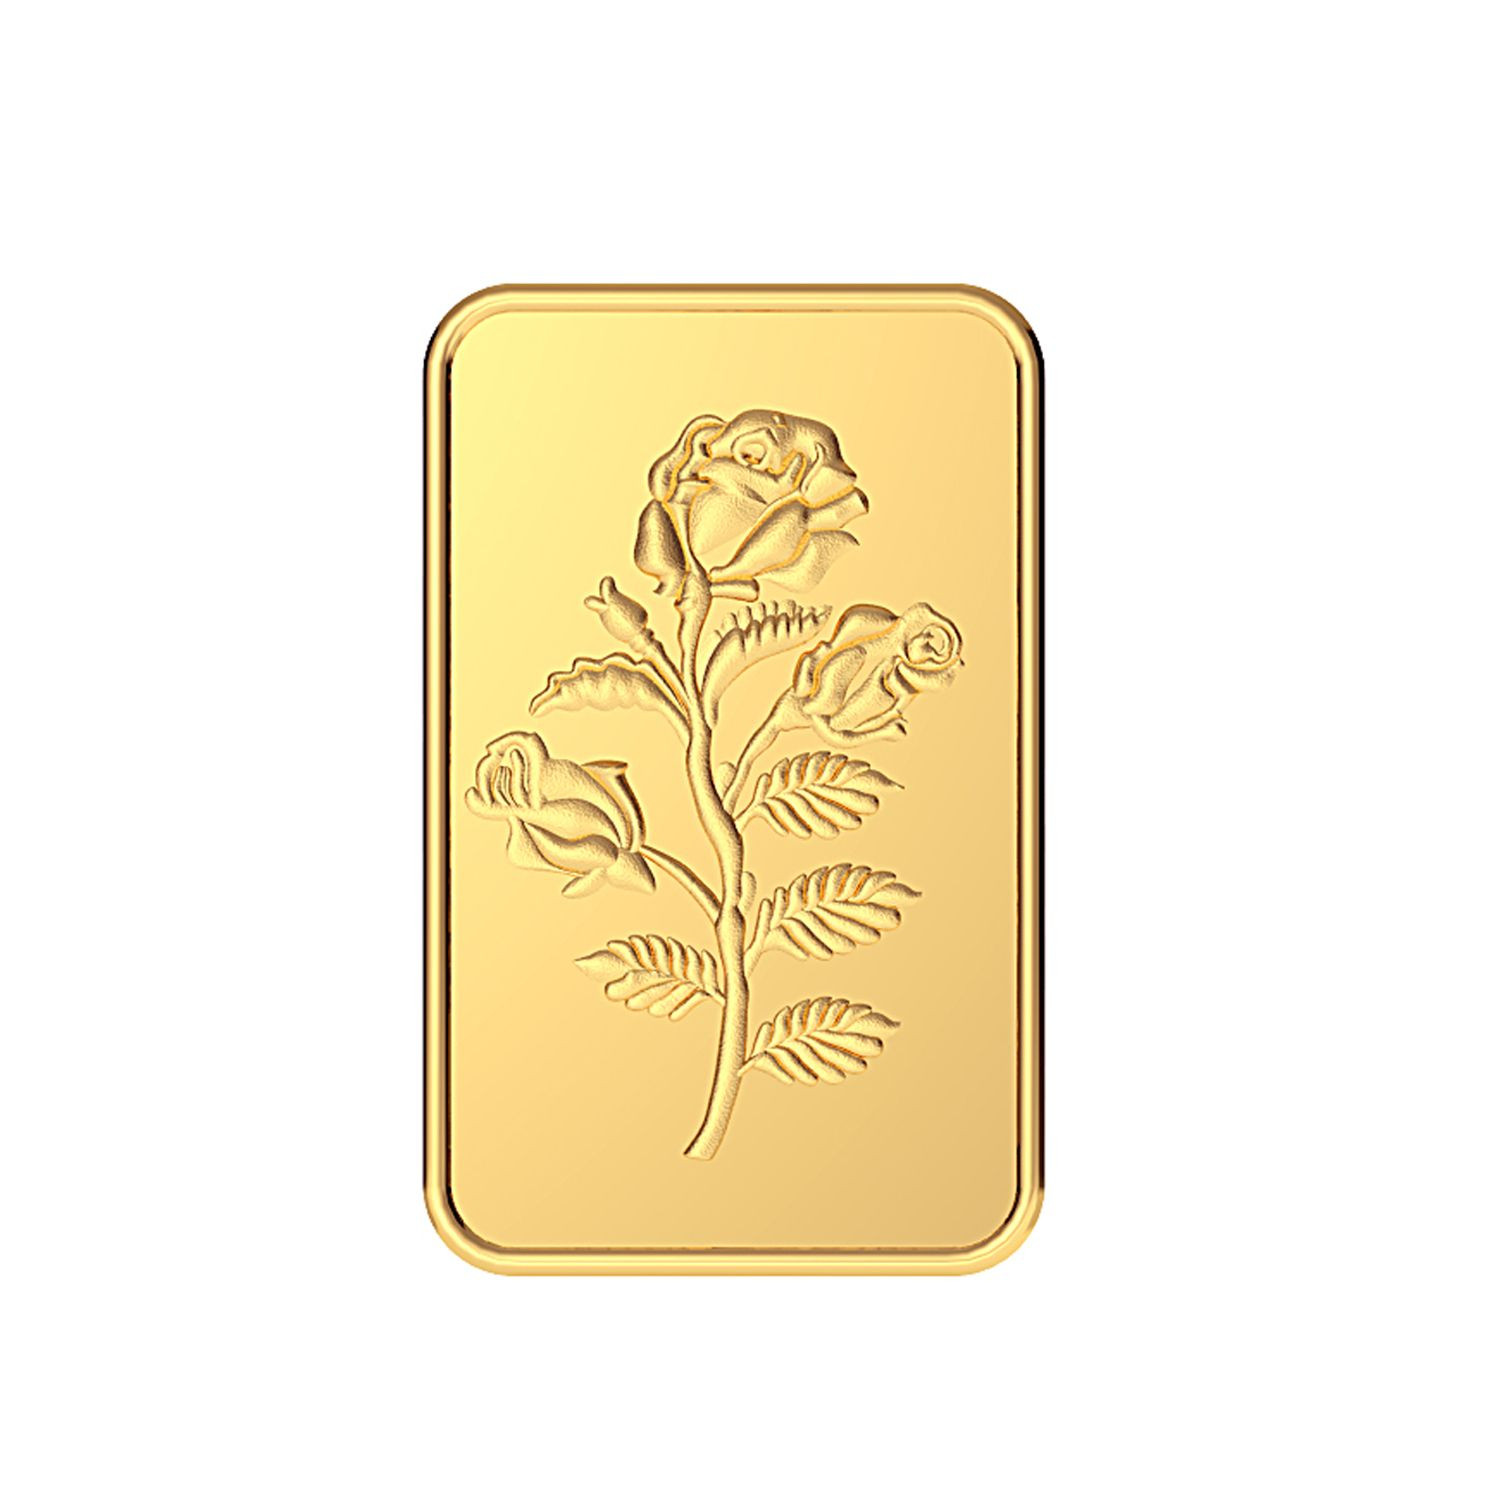 Malabar Gold 24k 999 Purity 10g Rose Bar